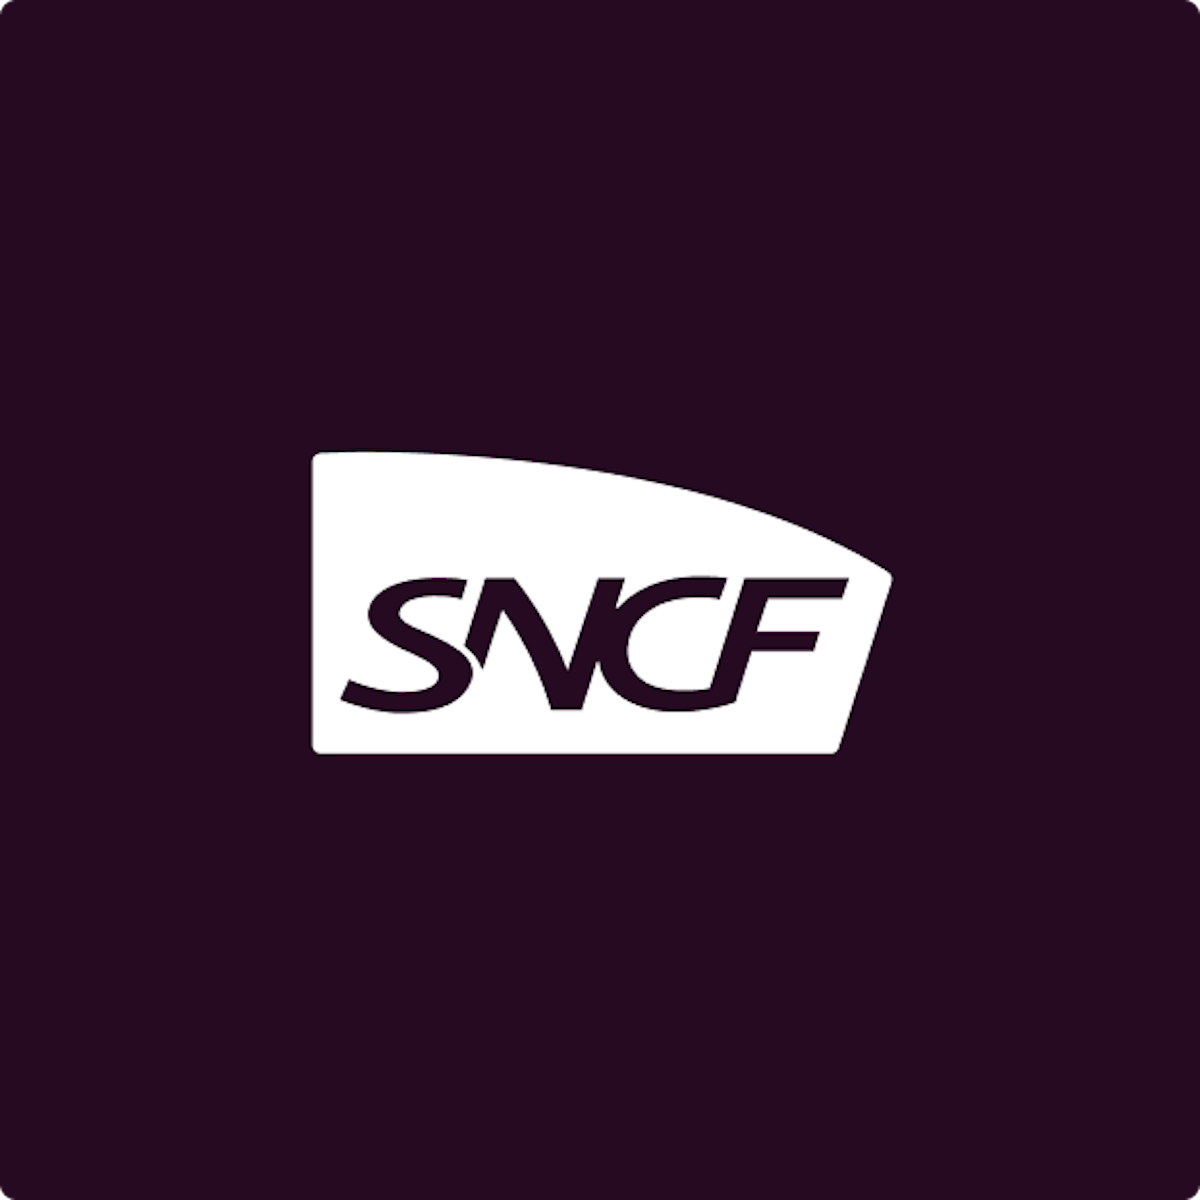 SNCF white logo on dark purple background